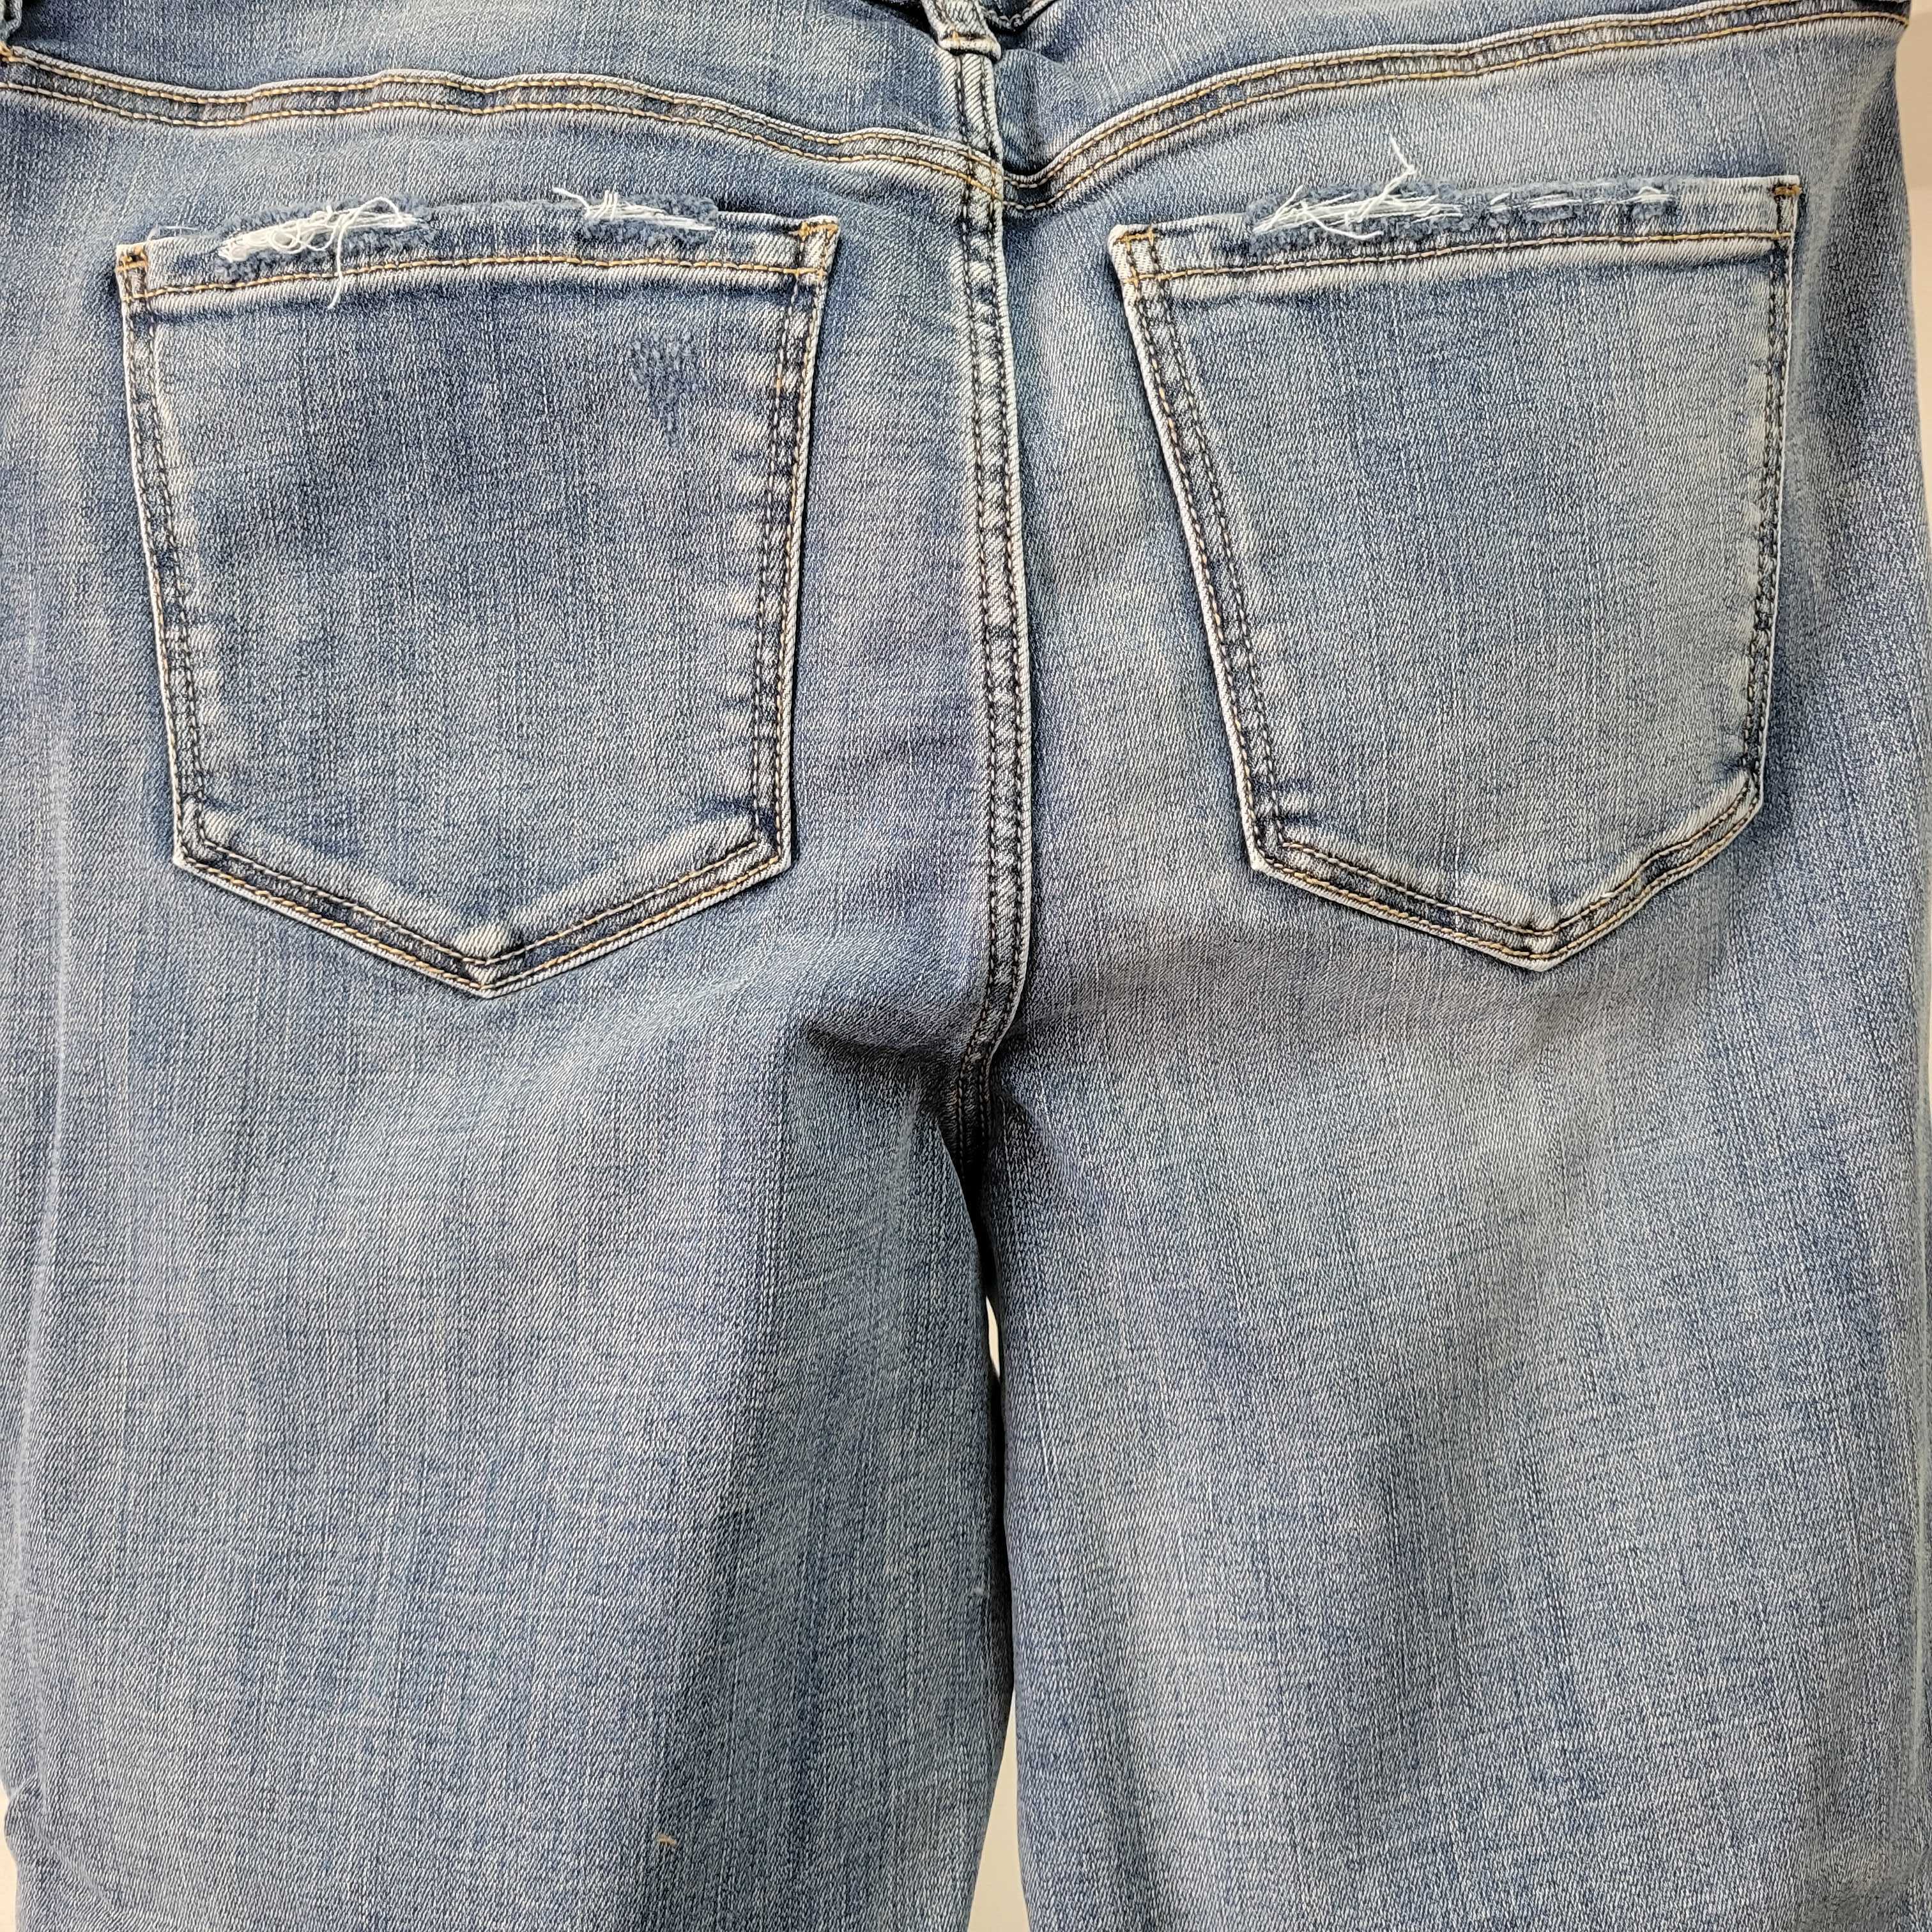 Nouveauté Pantalon ( Jeans) Printemps / Été